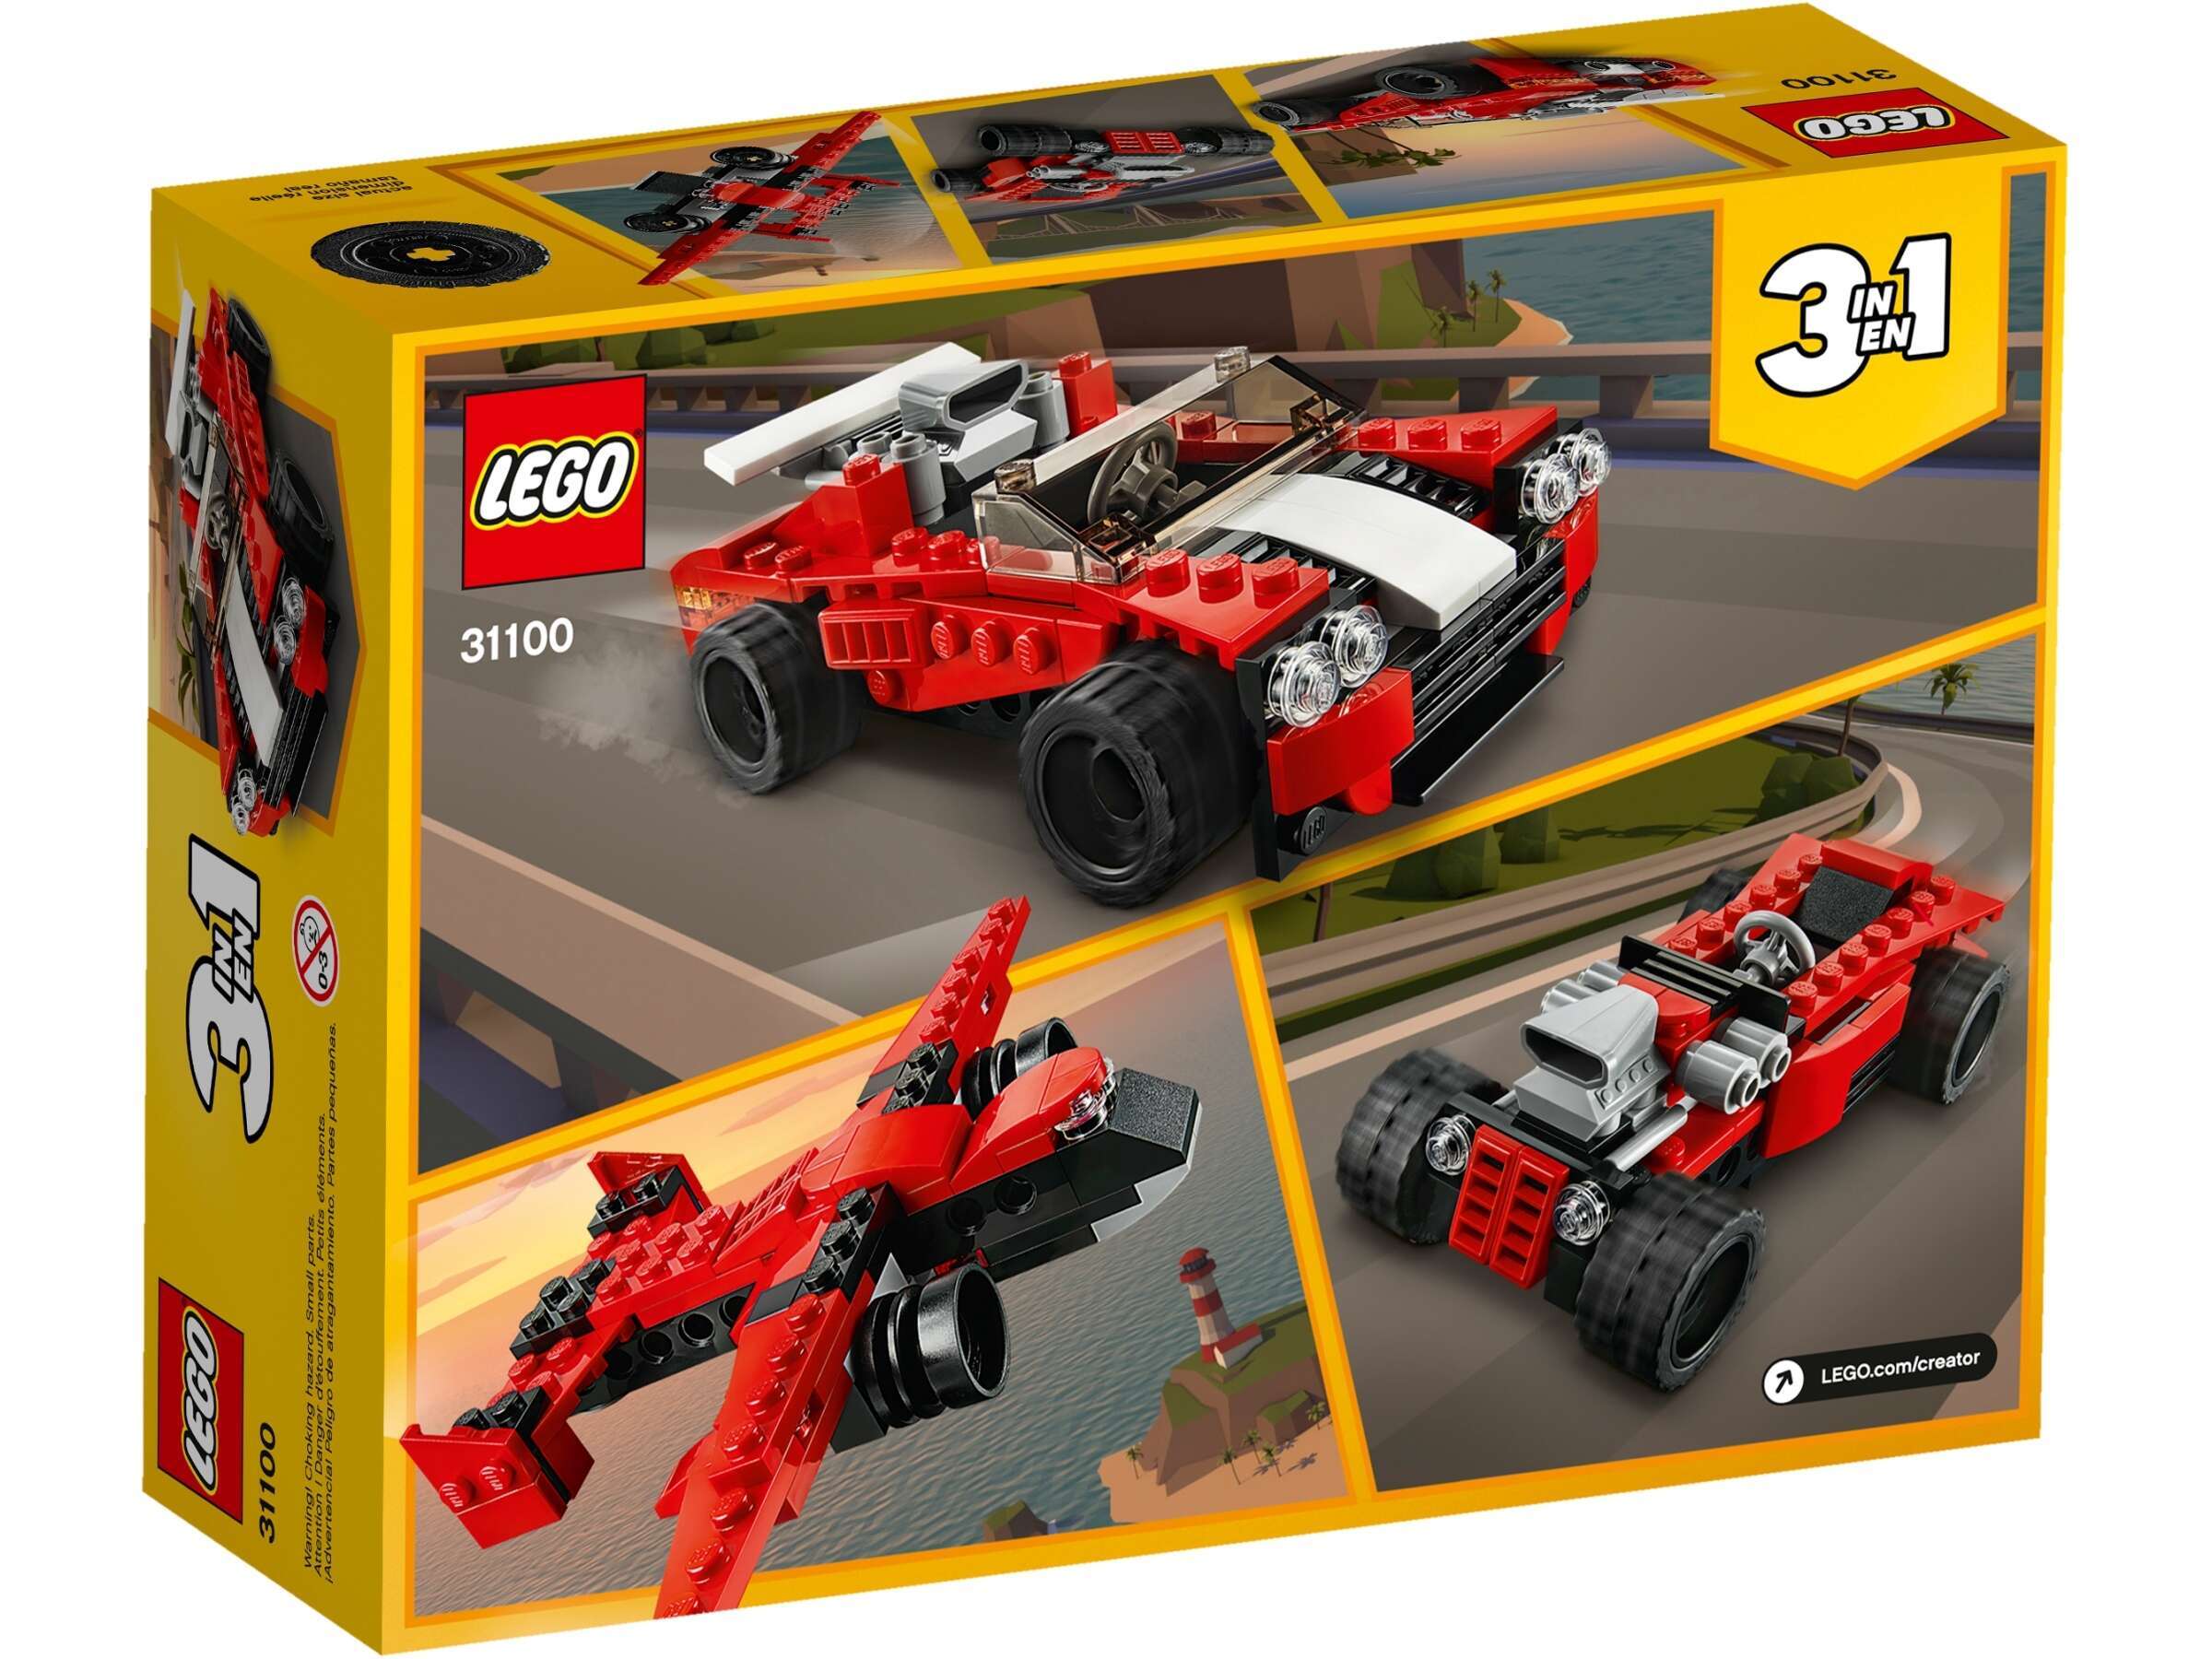 LEGO 31100 Creator 3-in-1 Sportwagen, Hot Rod oder historischer Flieger,